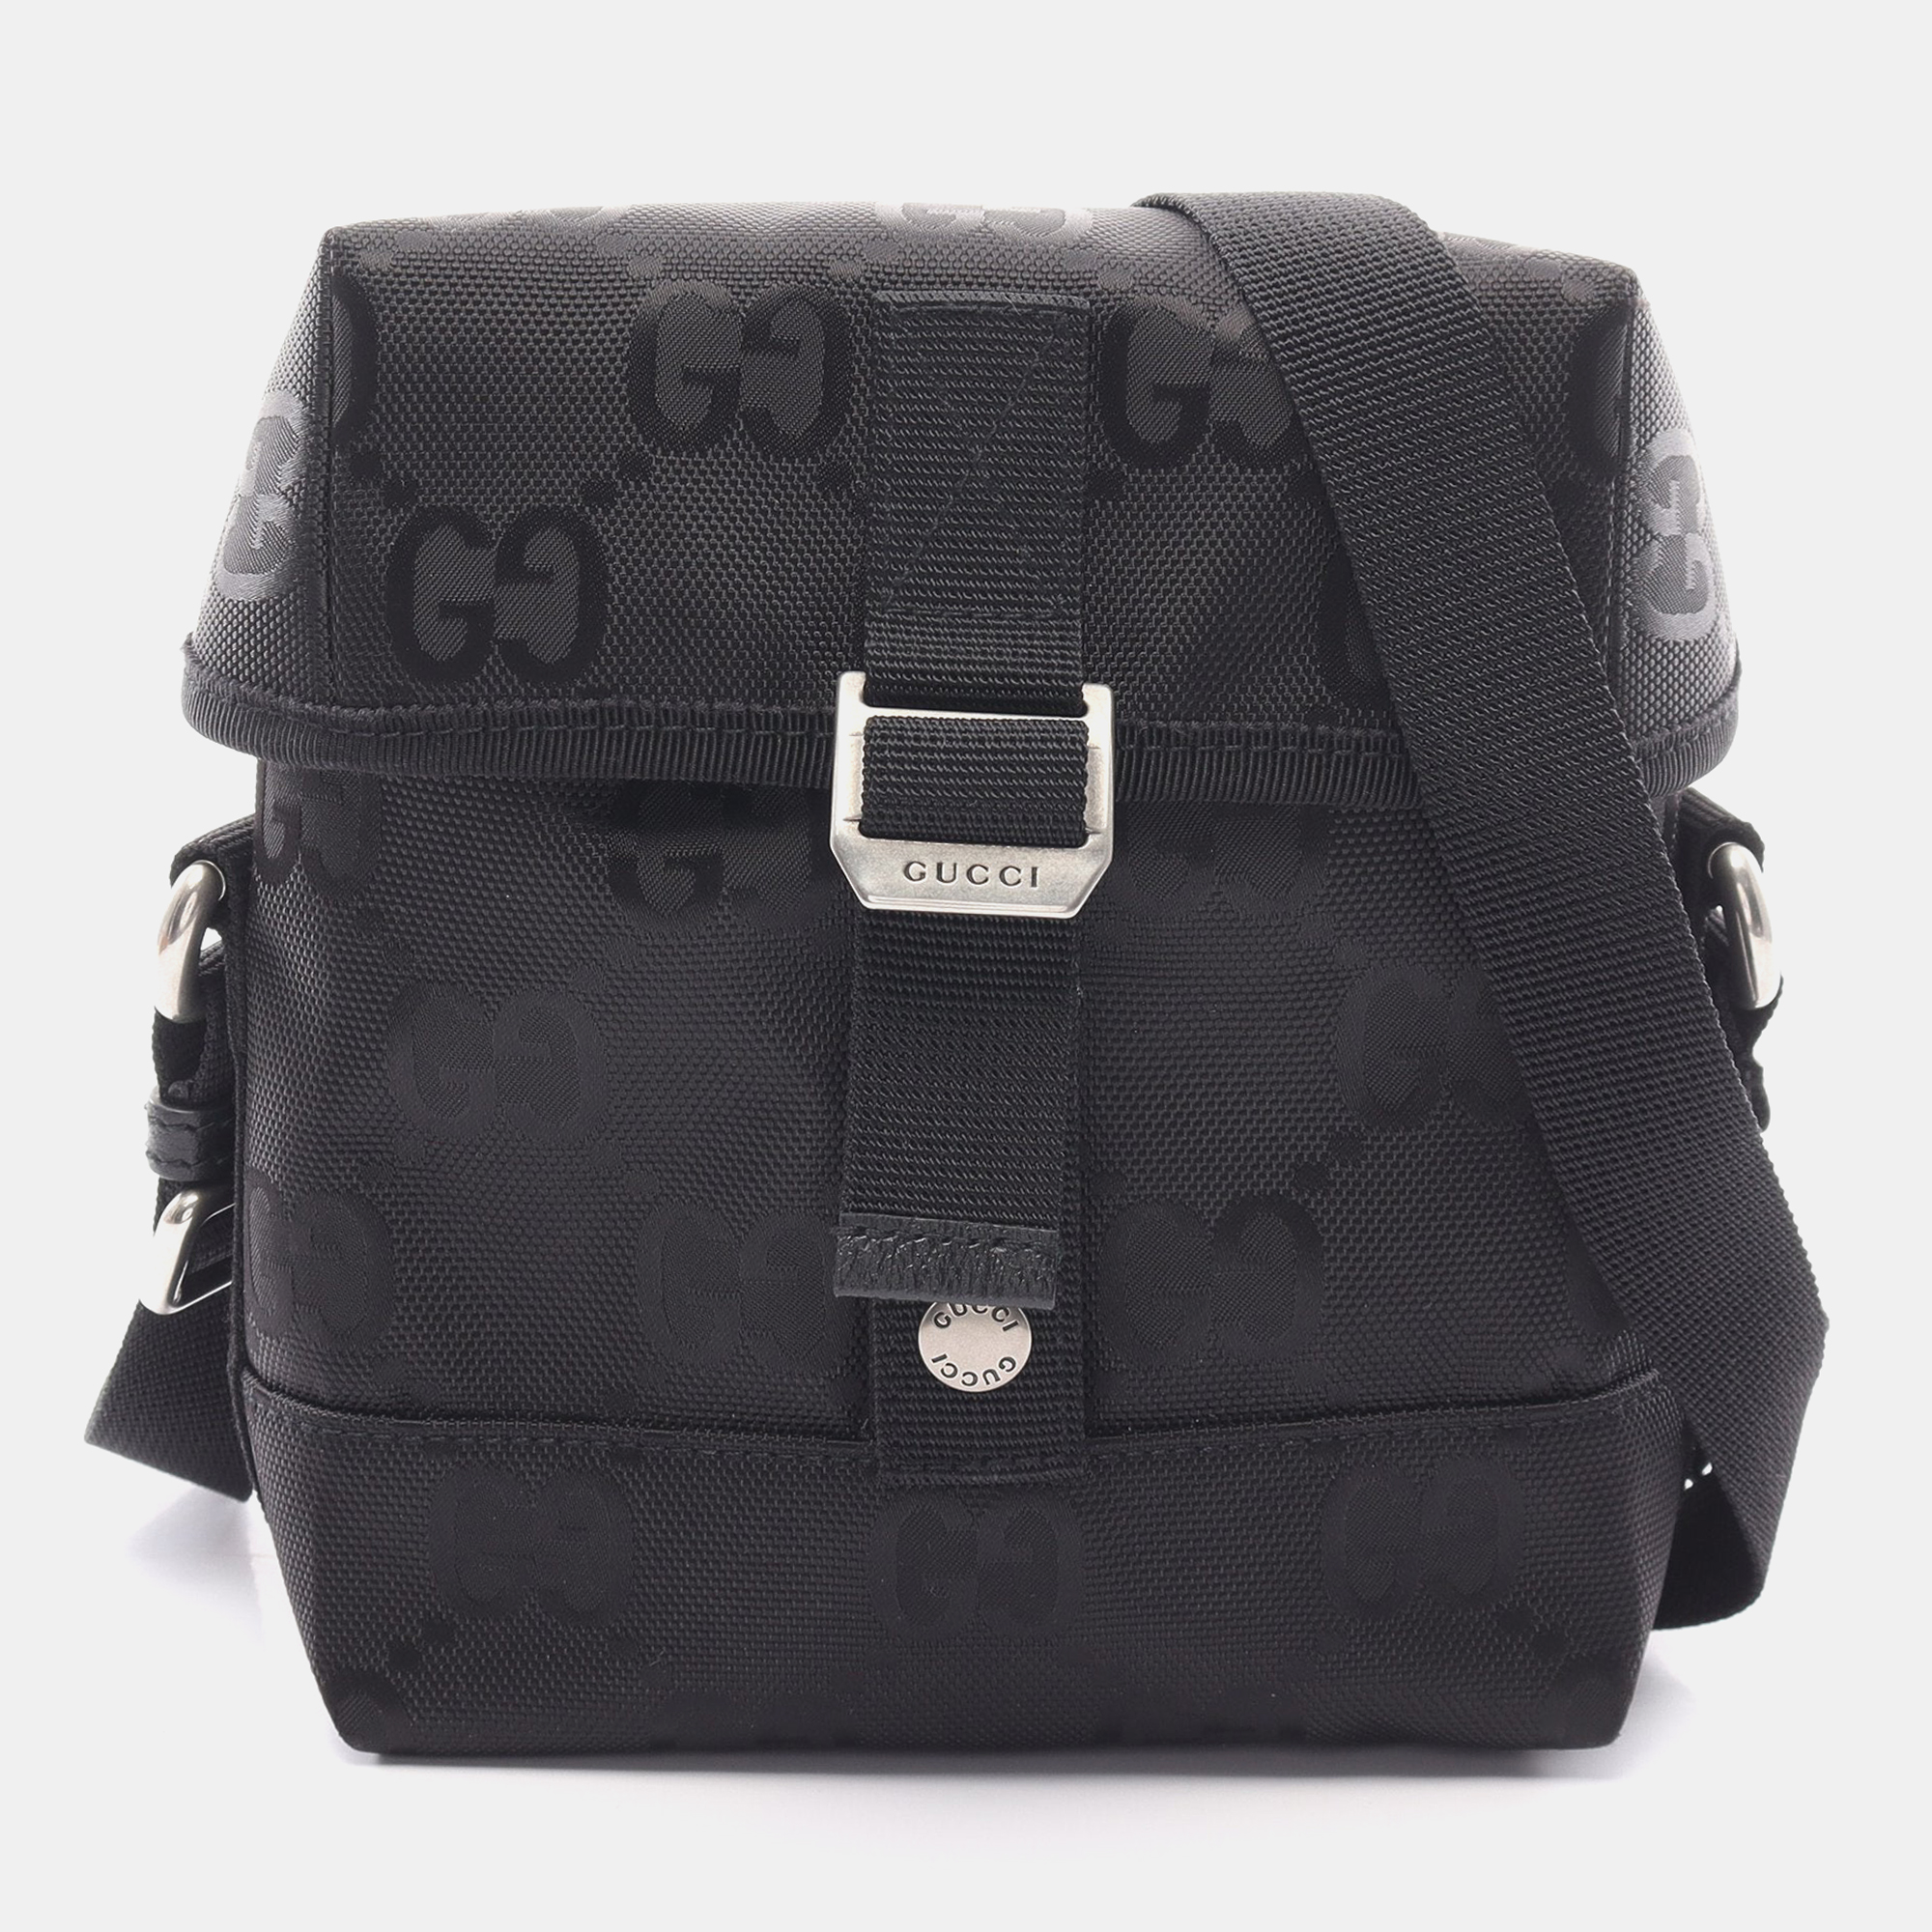 Gucci gucci of the grid messenger bag shoulder bag nylon black